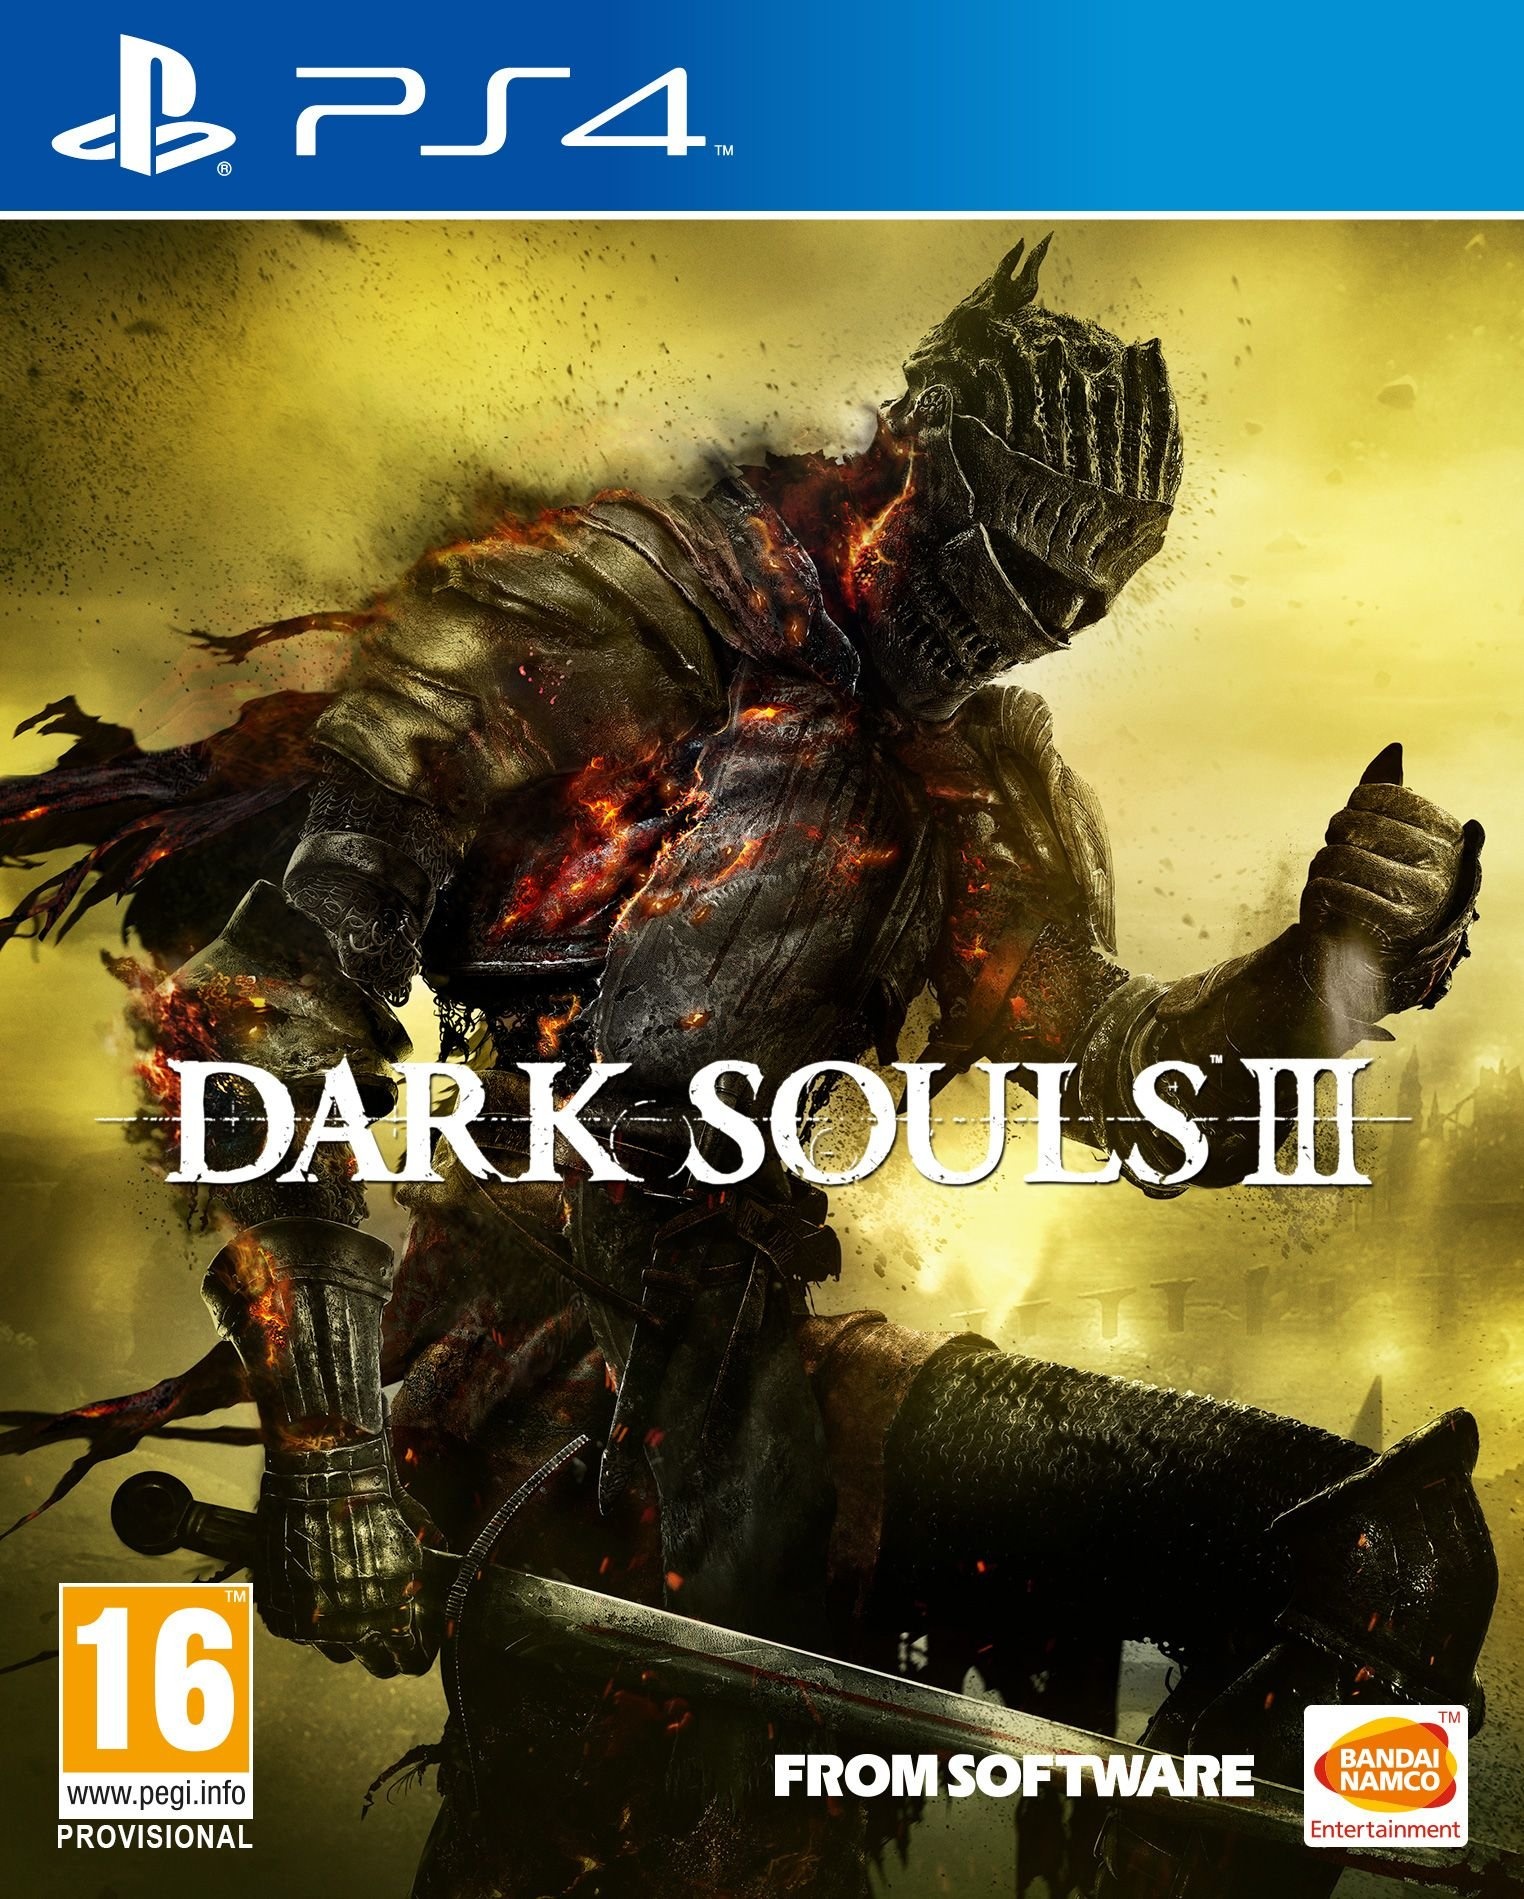 Dark Souls III, PS4